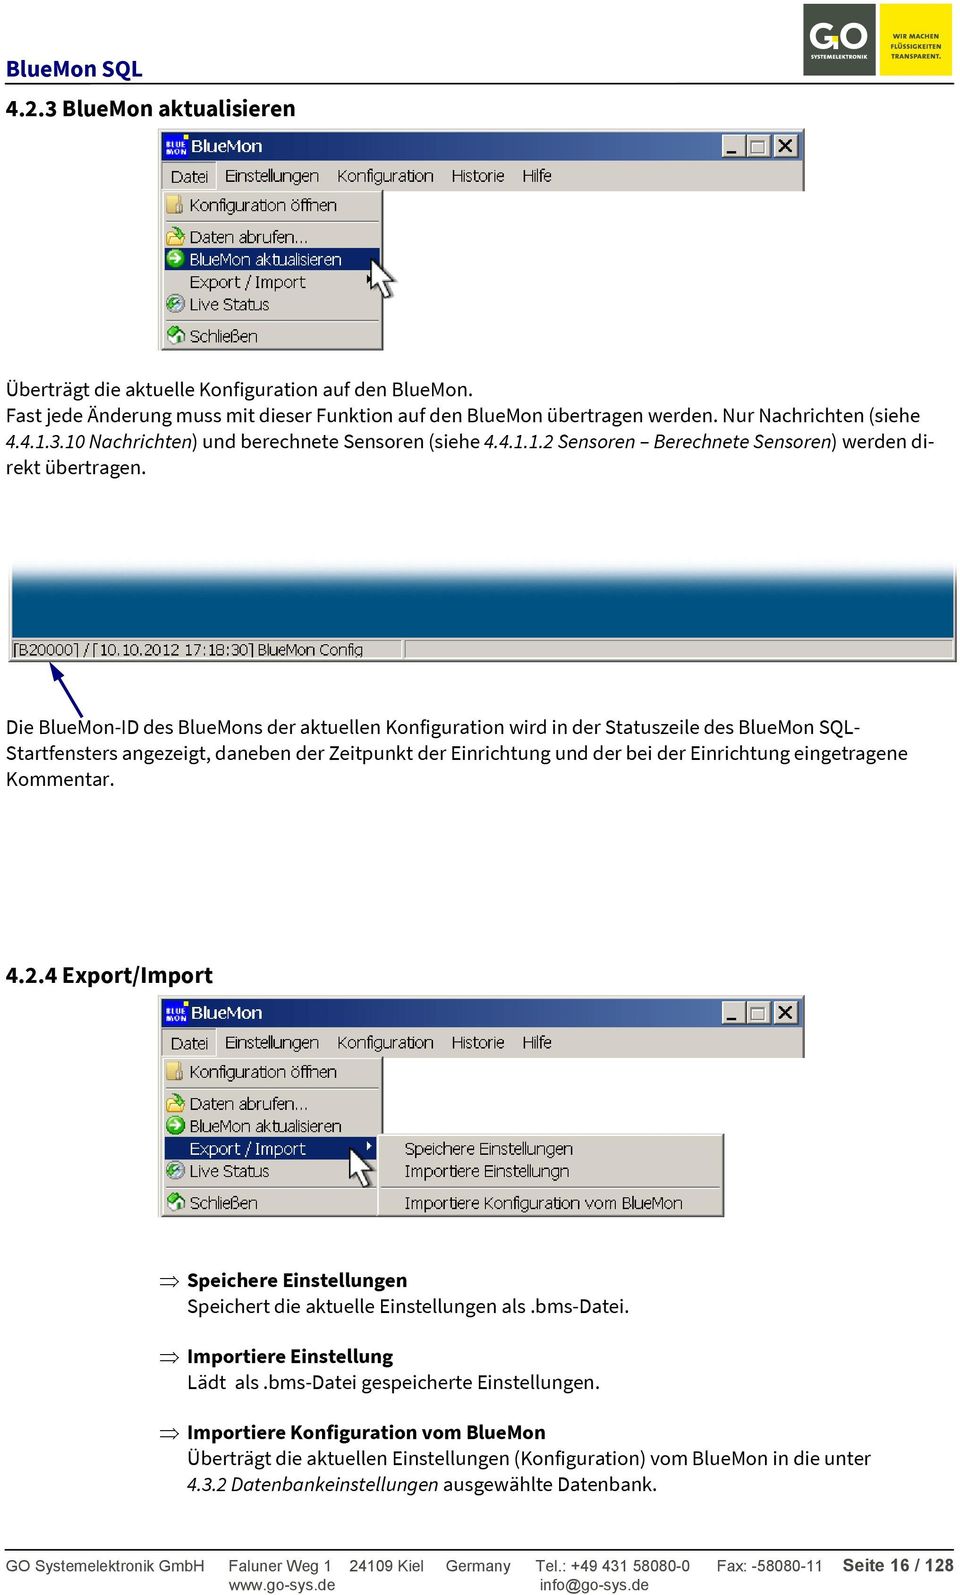 Die BlueMon-ID des BlueMons der aktuellen Konfiguration wird in der Statuszeile des BlueMon SQL- Startfensters angezeigt, daneben der Zeitpunkt der Einrichtung und der bei der Einrichtung